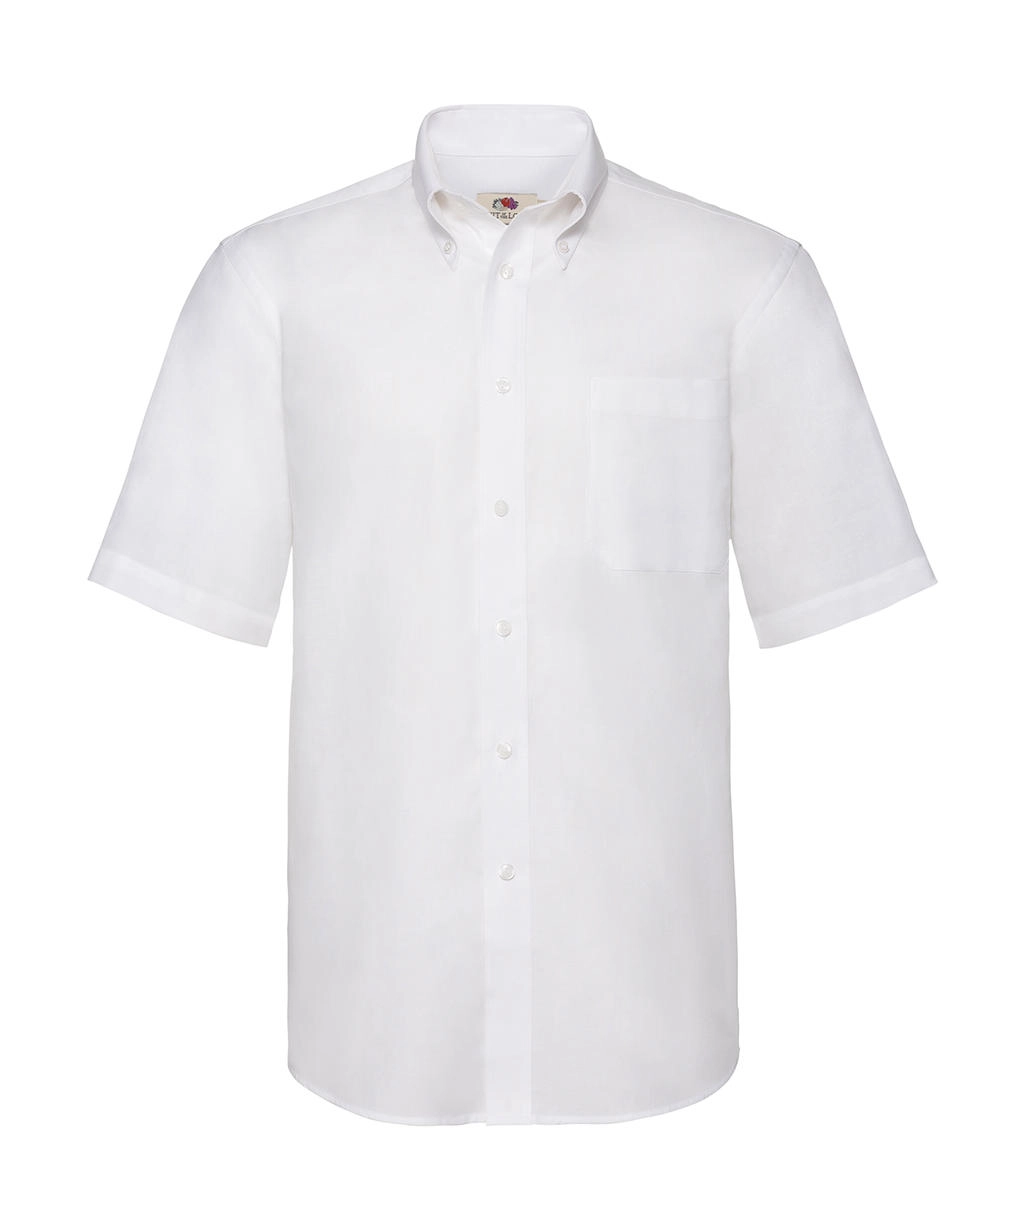 Oxford Shirt zum Besticken und Bedrucken in der Farbe White mit Ihren Logo, Schriftzug oder Motiv.